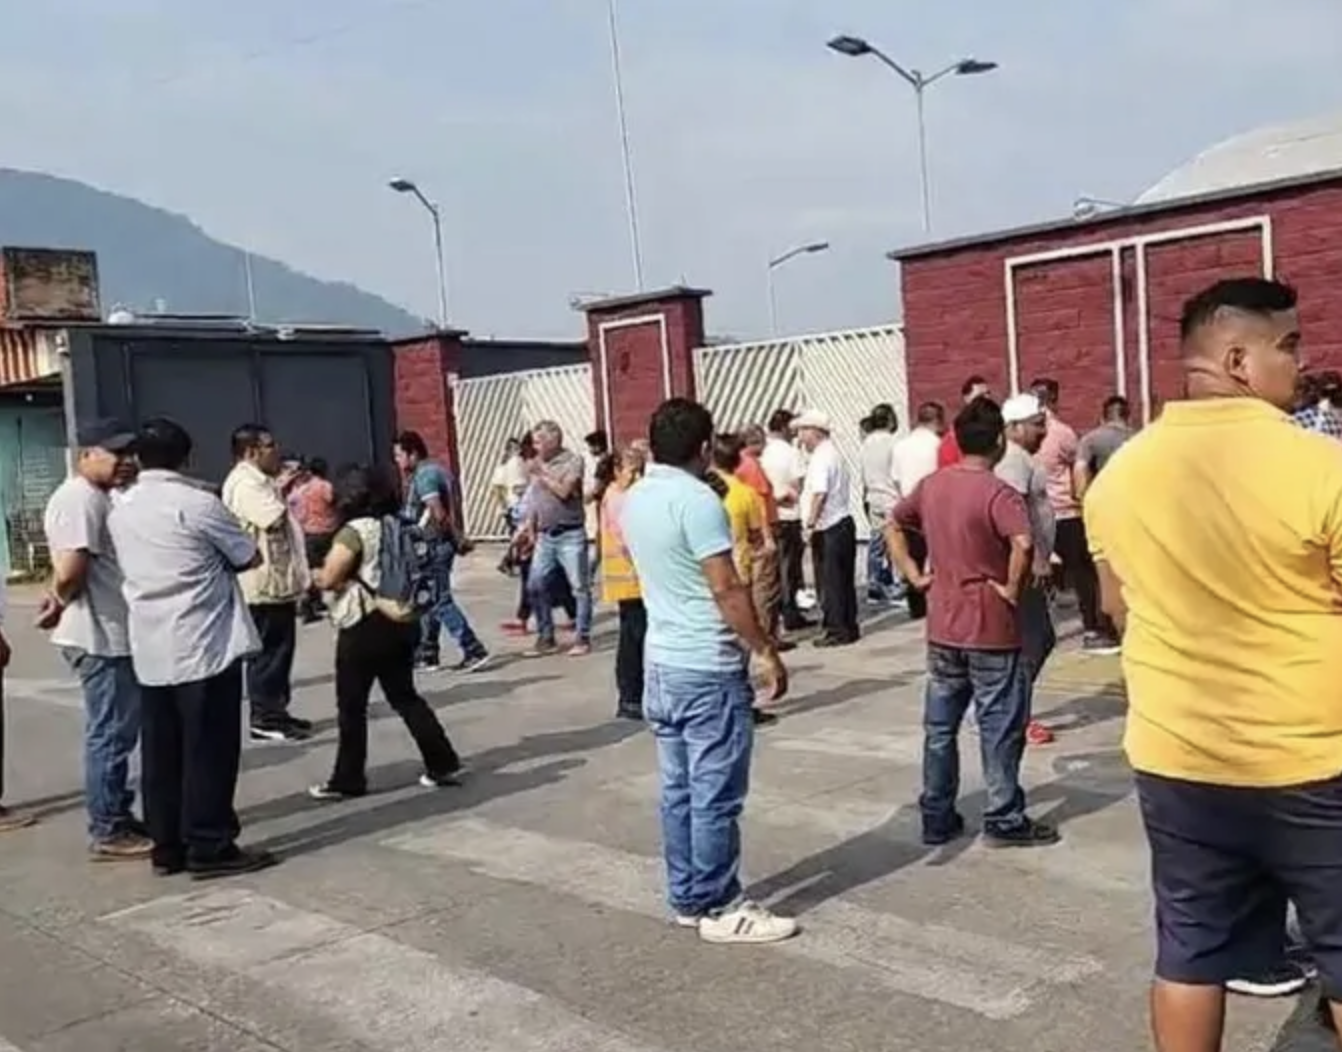 Veracruz- En Veracruz, habitantes de Ixtaczoquitlán protestan por agua; los detienen y encarcelan (Milenio)